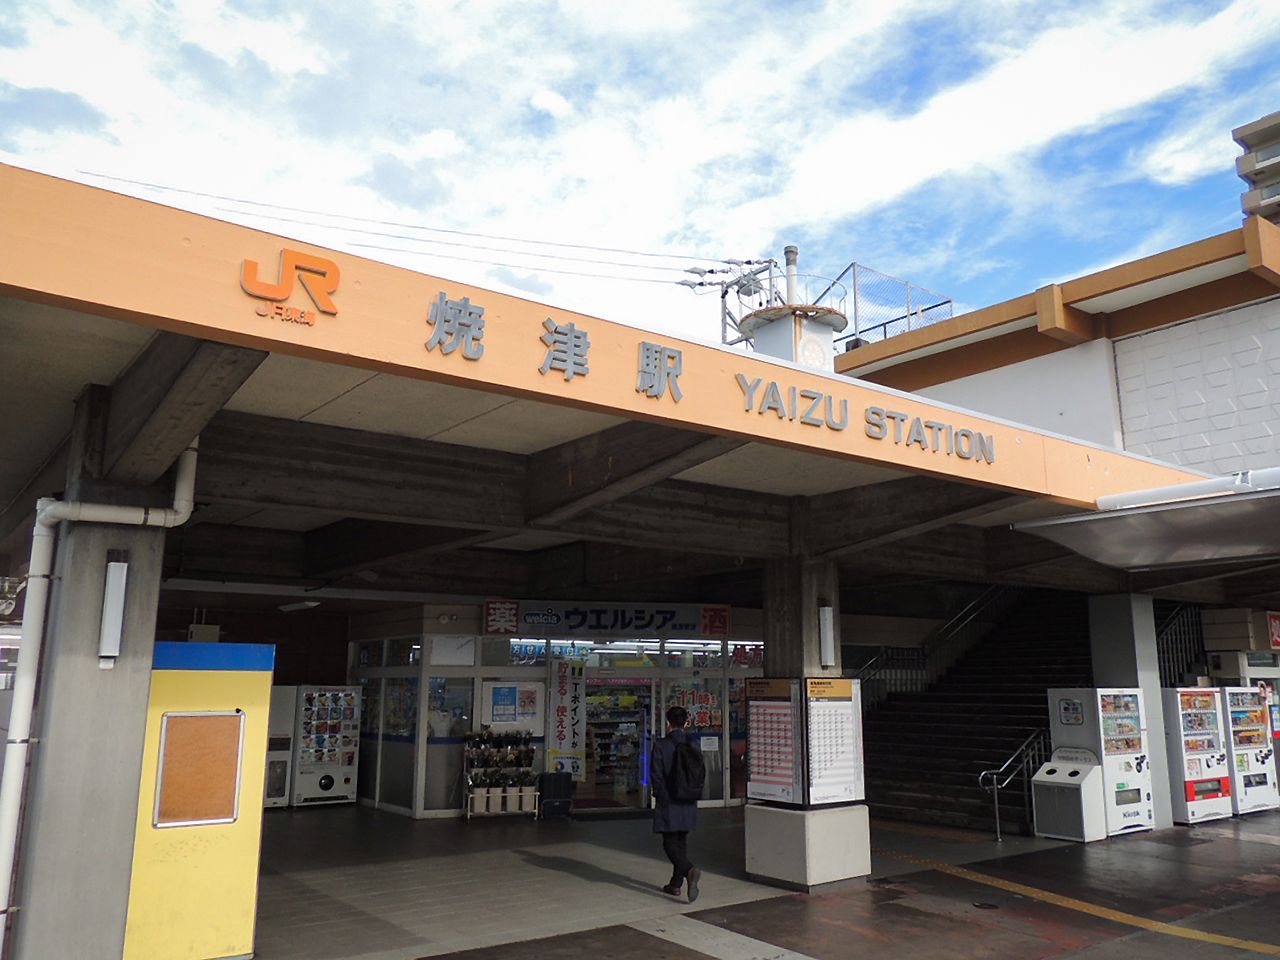 JR东海道本线的烧津站。从车站到渔港步行约15分钟，乘坐静铁巴士到小川港约12分钟